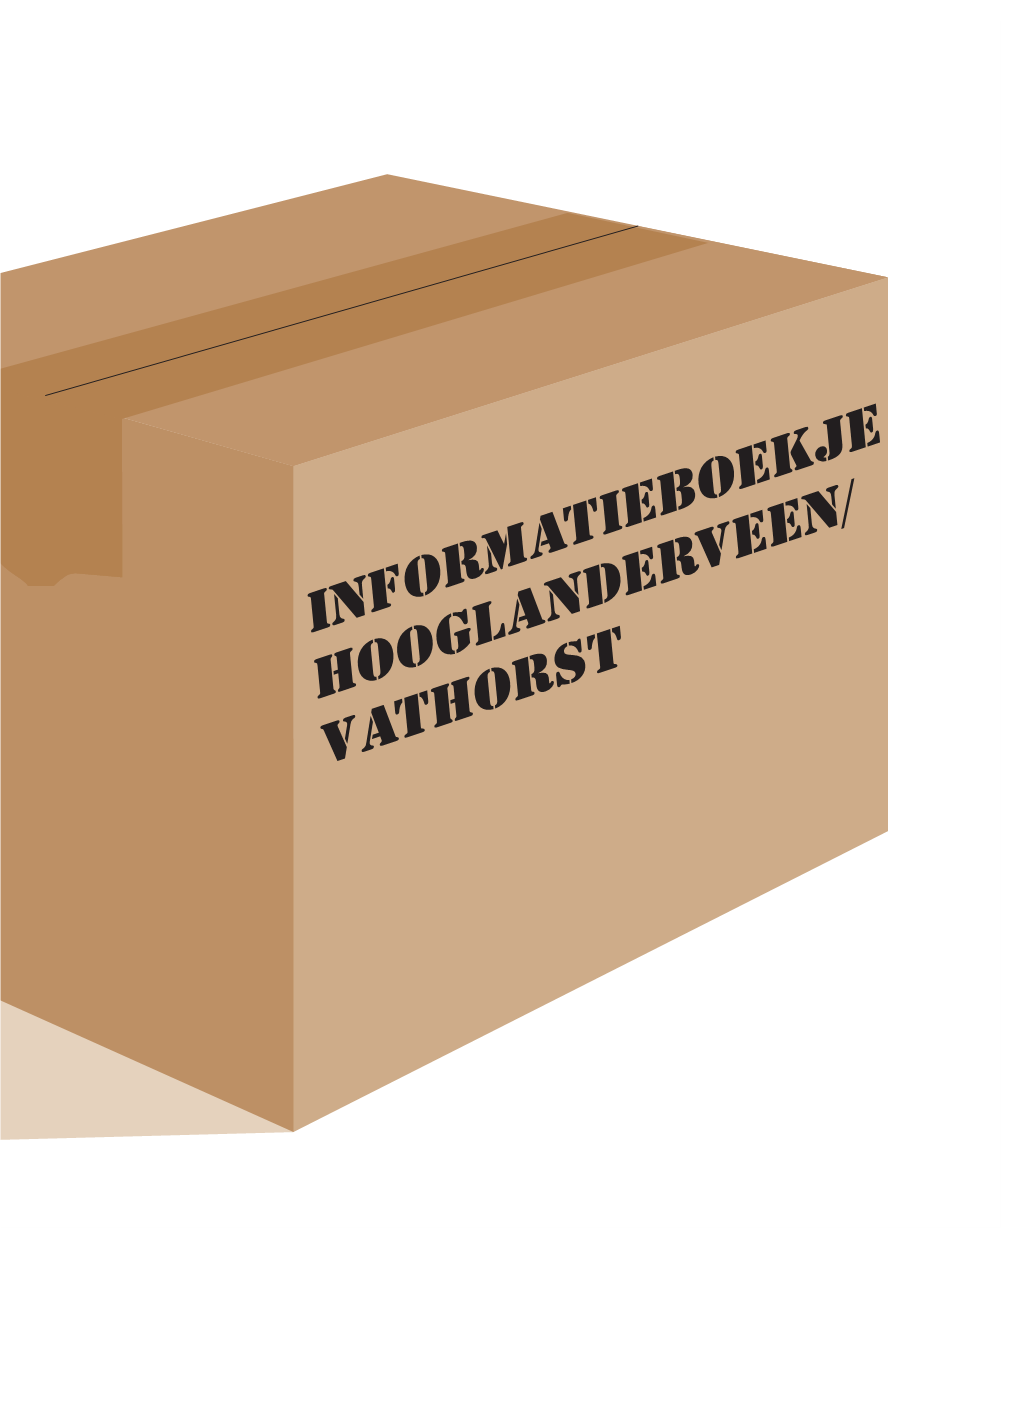 Informatieboekje Hooglanderveen-Vathorst